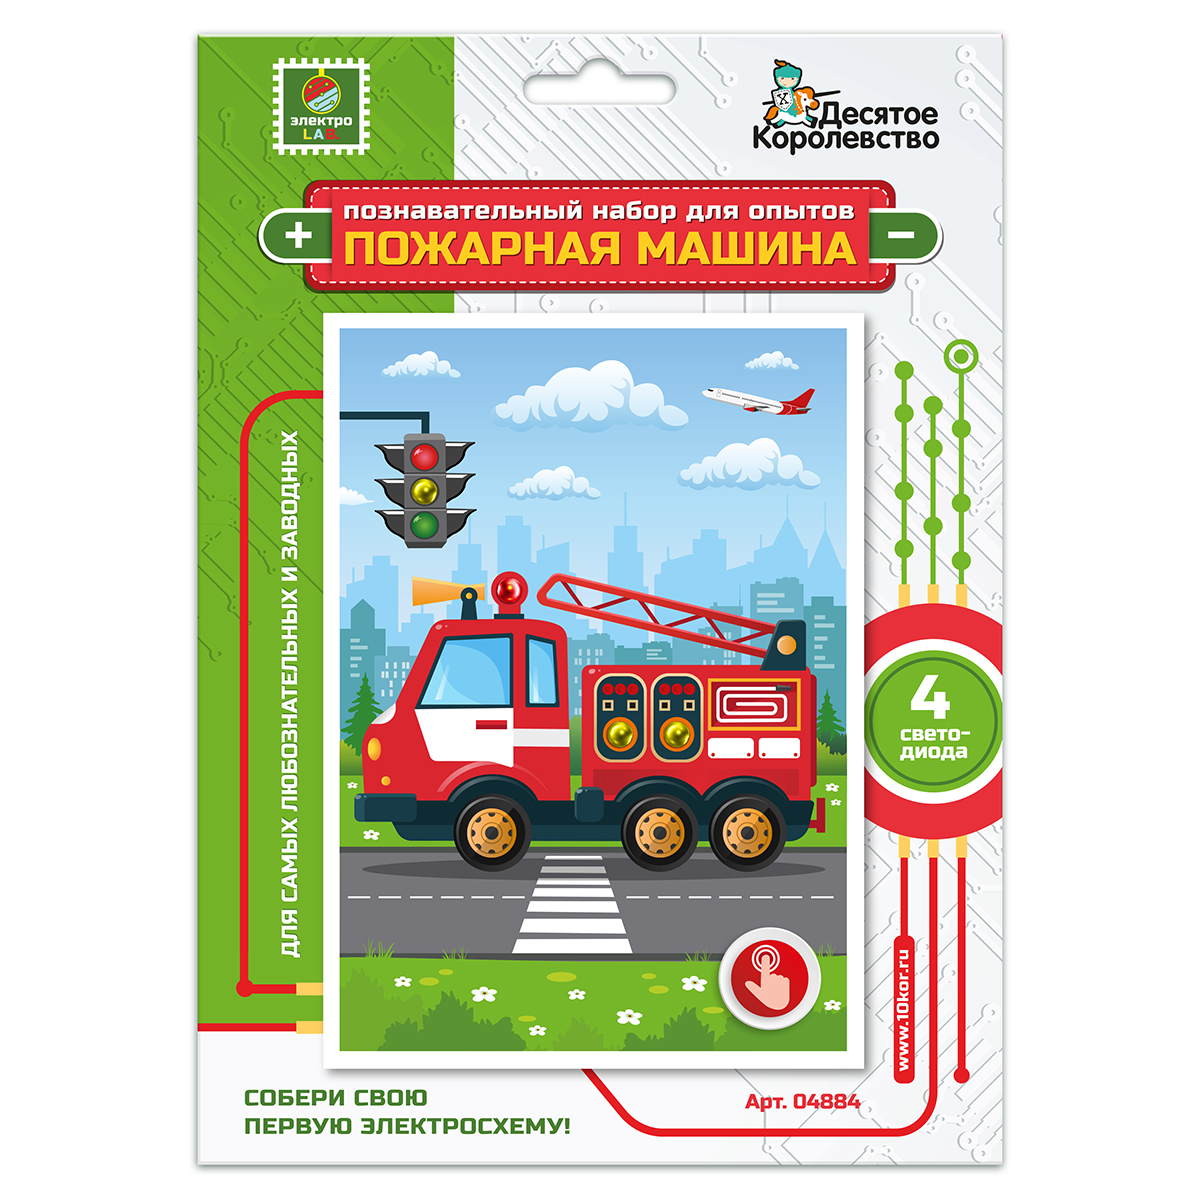 Набор для опытов Пожарная машина (открытка формат А6)